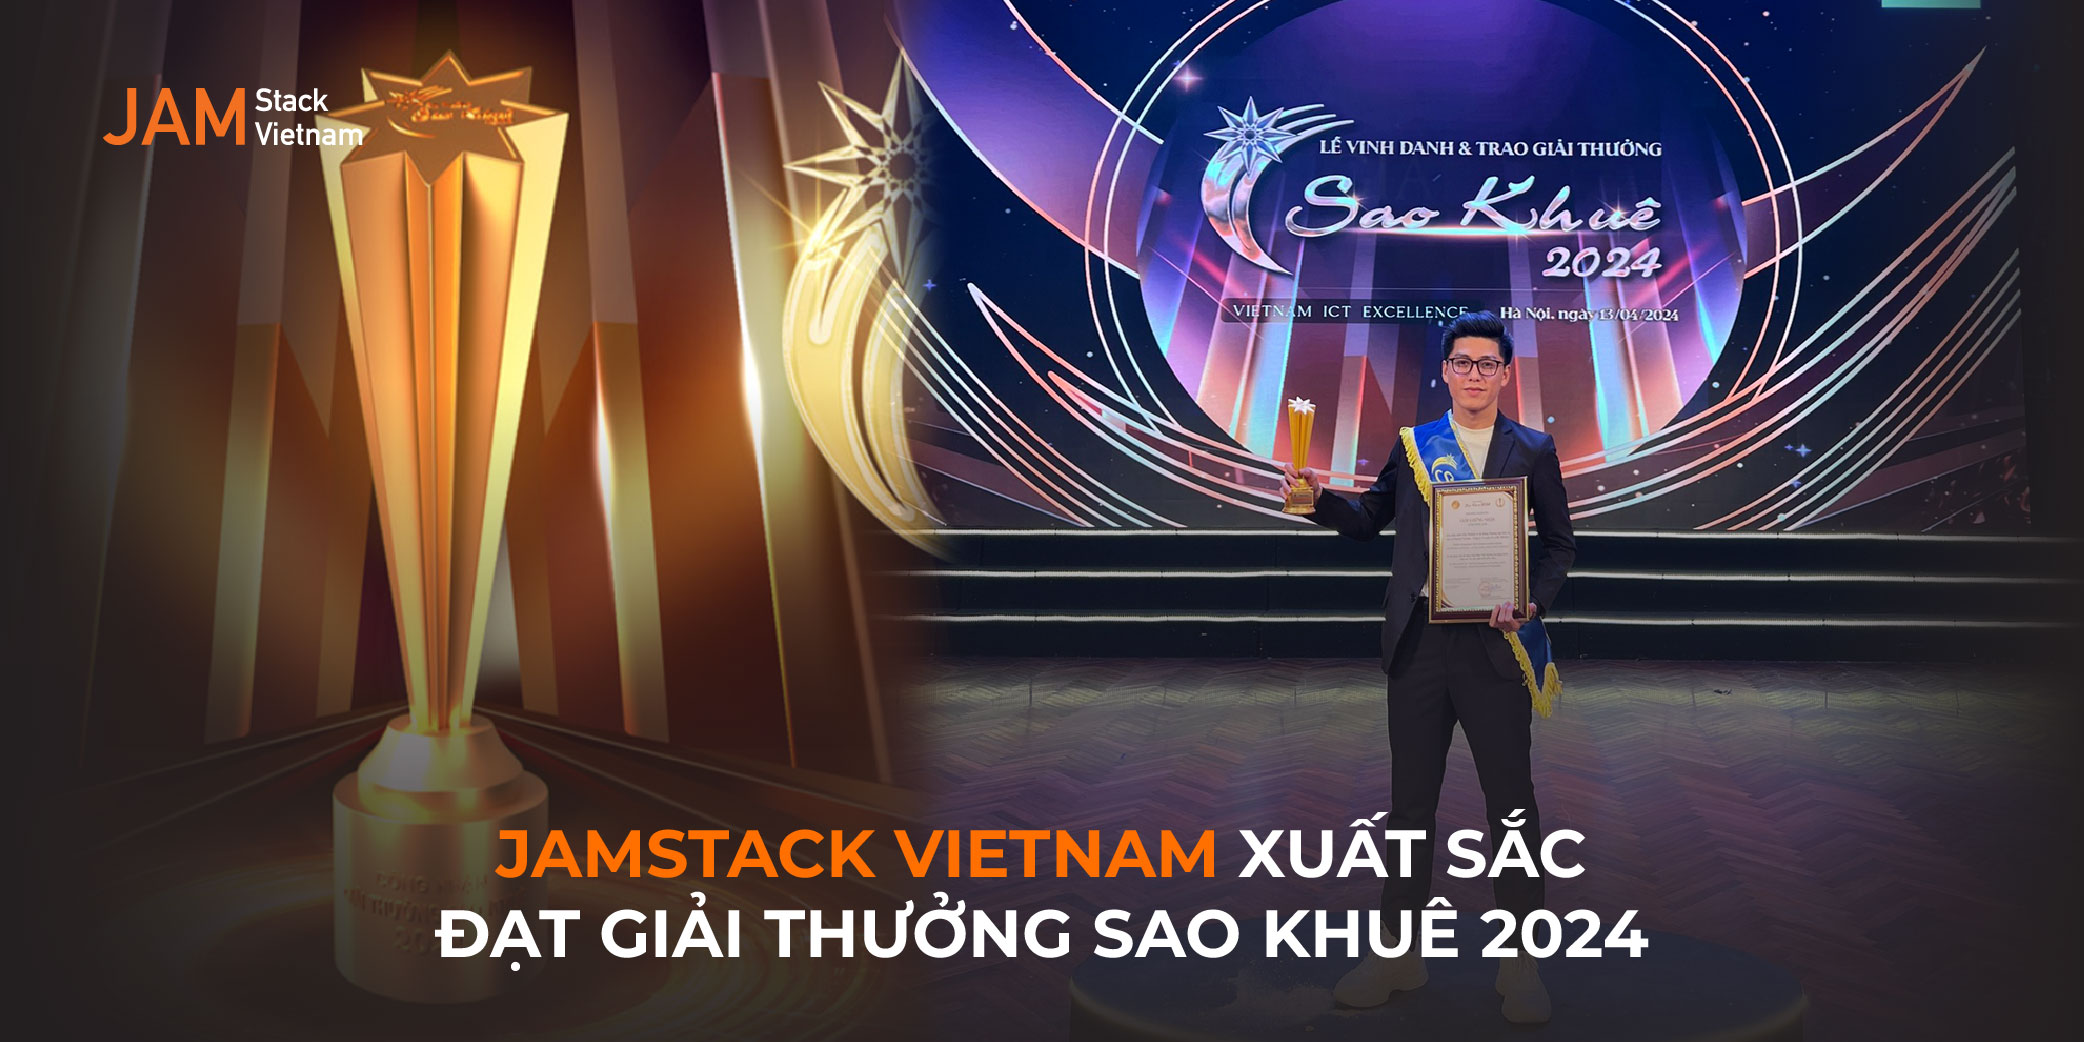 JAMstack Vietnam xuất sắc đạt giải thưởng Sao Khuê 2024 với đề cử “Giải pháp tư vấn phát triển Website và hệ thống Thương mại điện tử”